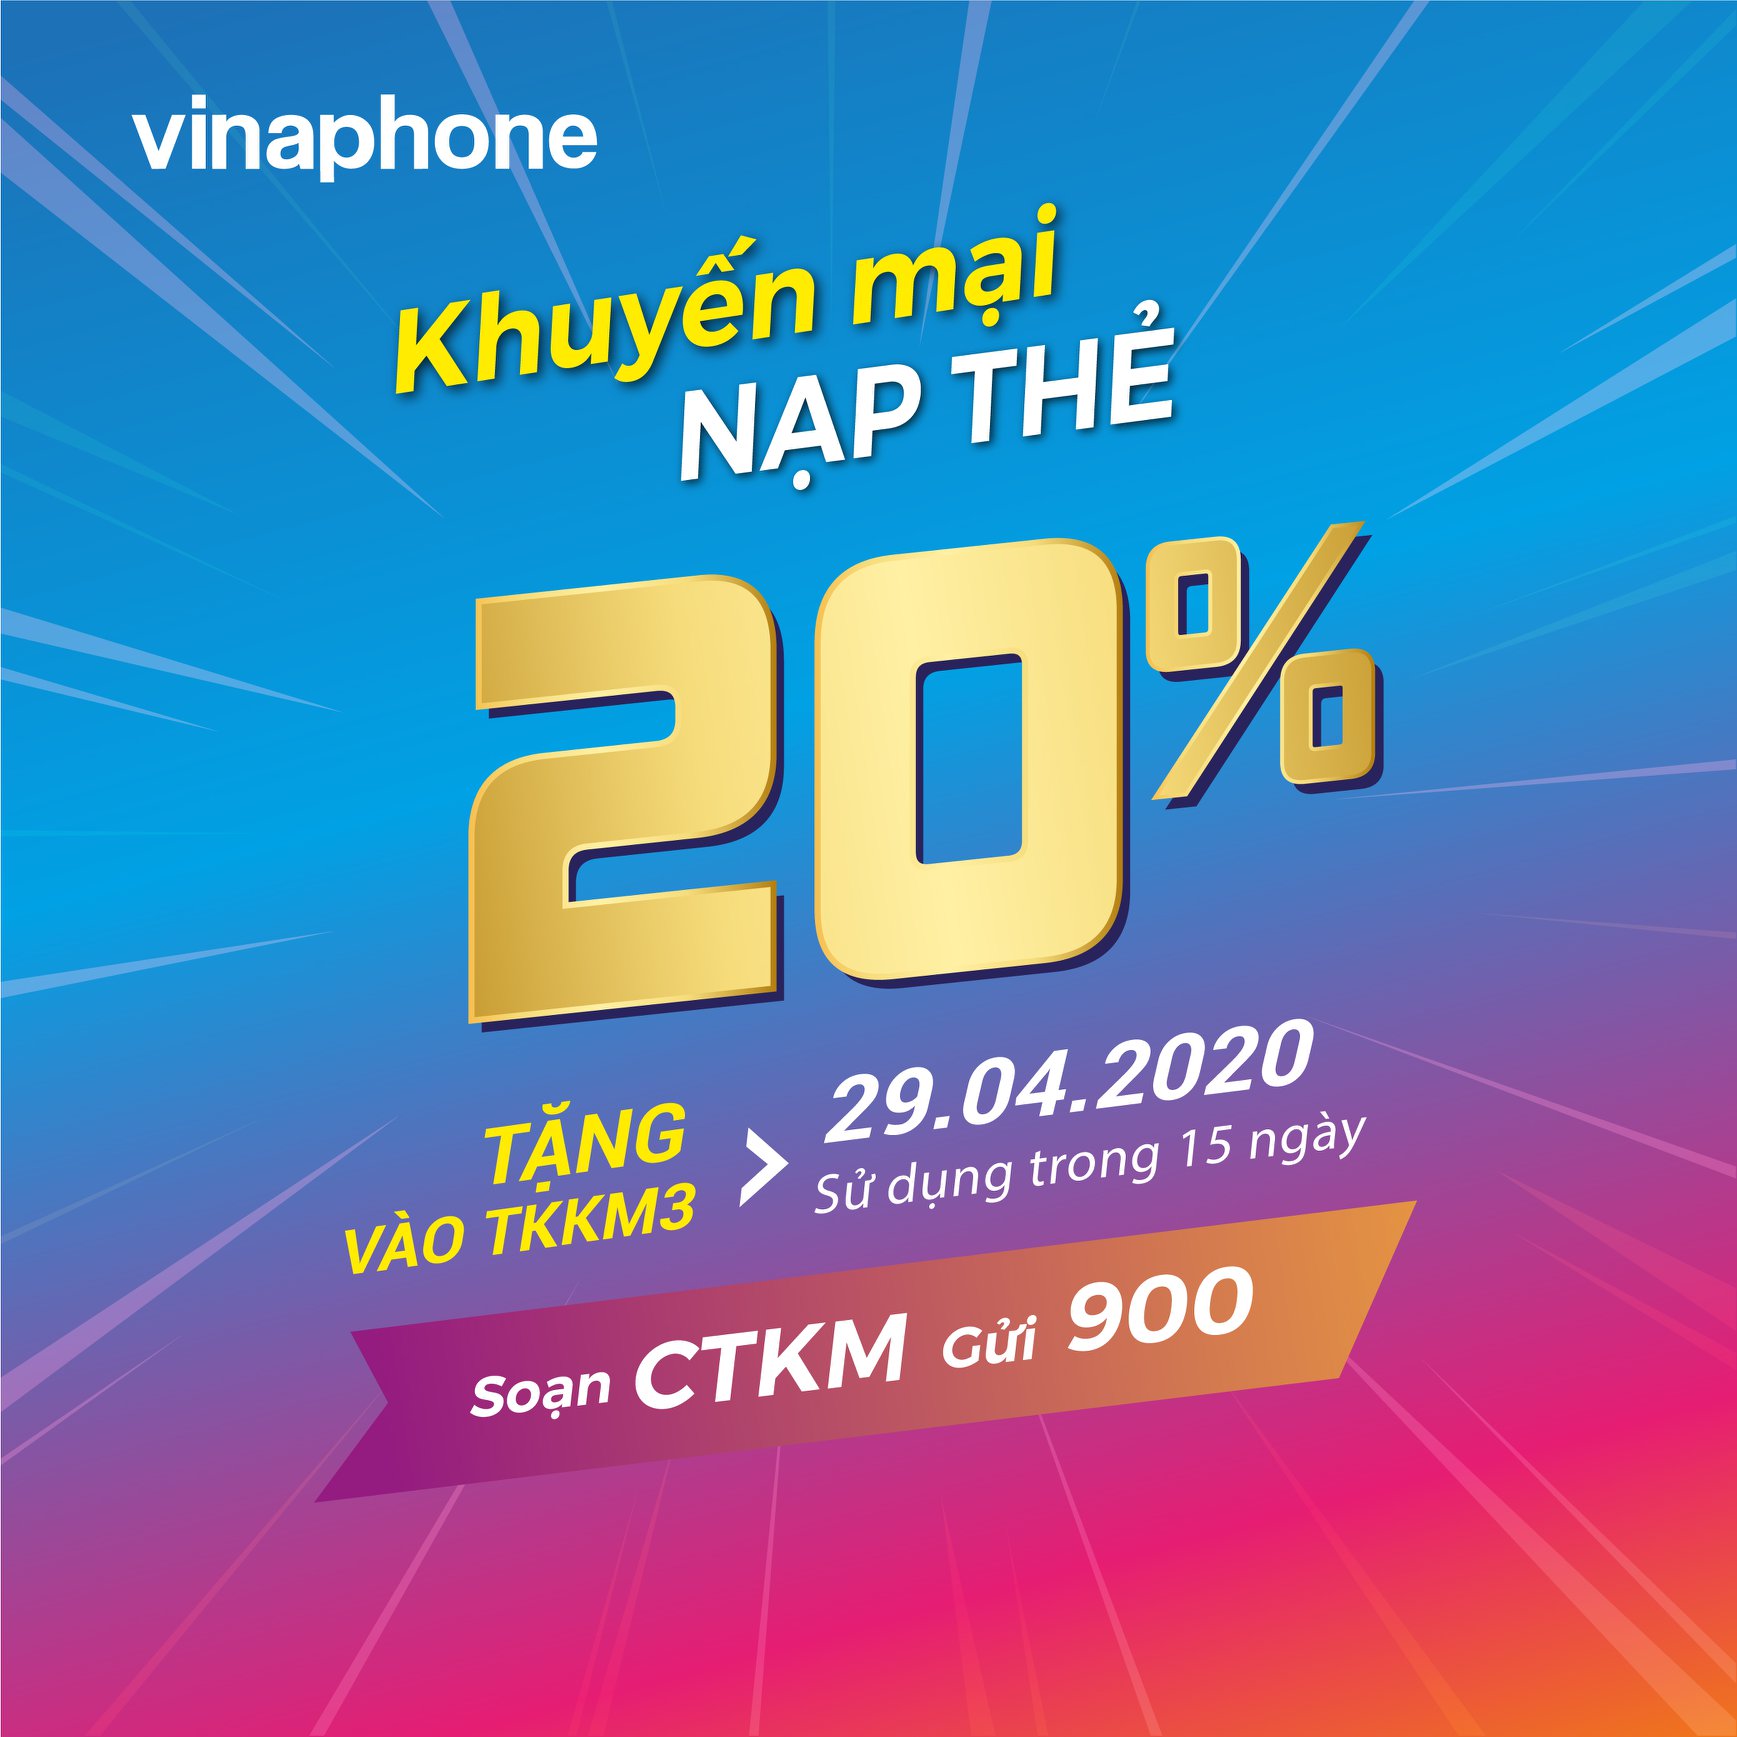 Vinaphone khuyến mãi ngày 29/4/2020 tặng 20% giá trị  thẻ nạp cục bộVinaphone khuyến mãi ngày 29/4/2020 tặng 20% giá trị  thẻ nạp cục bộ